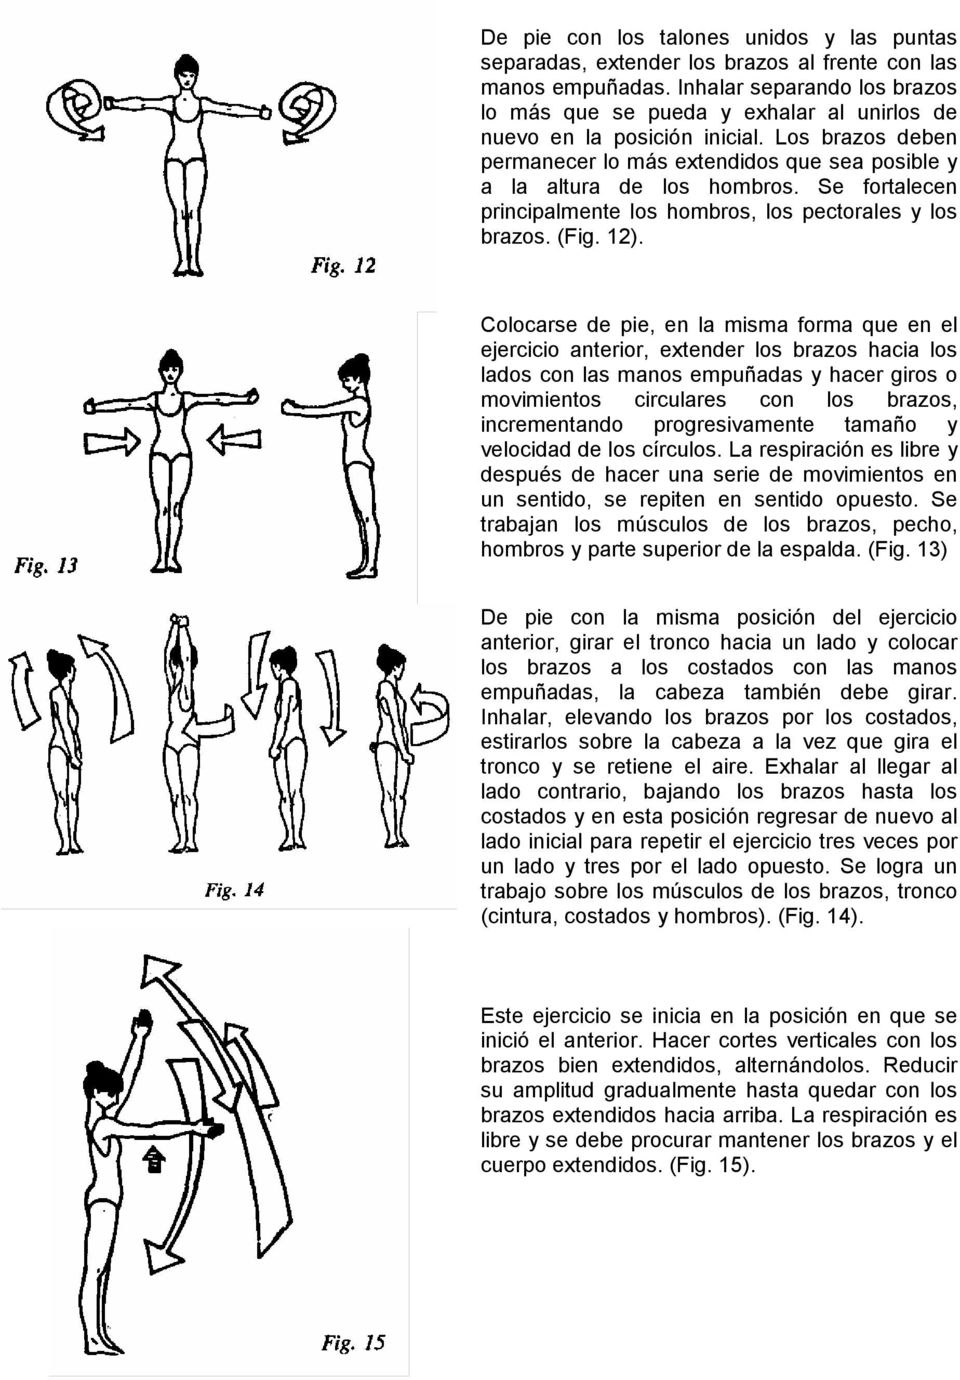 Se fortalecen principalmente los hombros, los pectorales y los brazos. (Fig. 12).